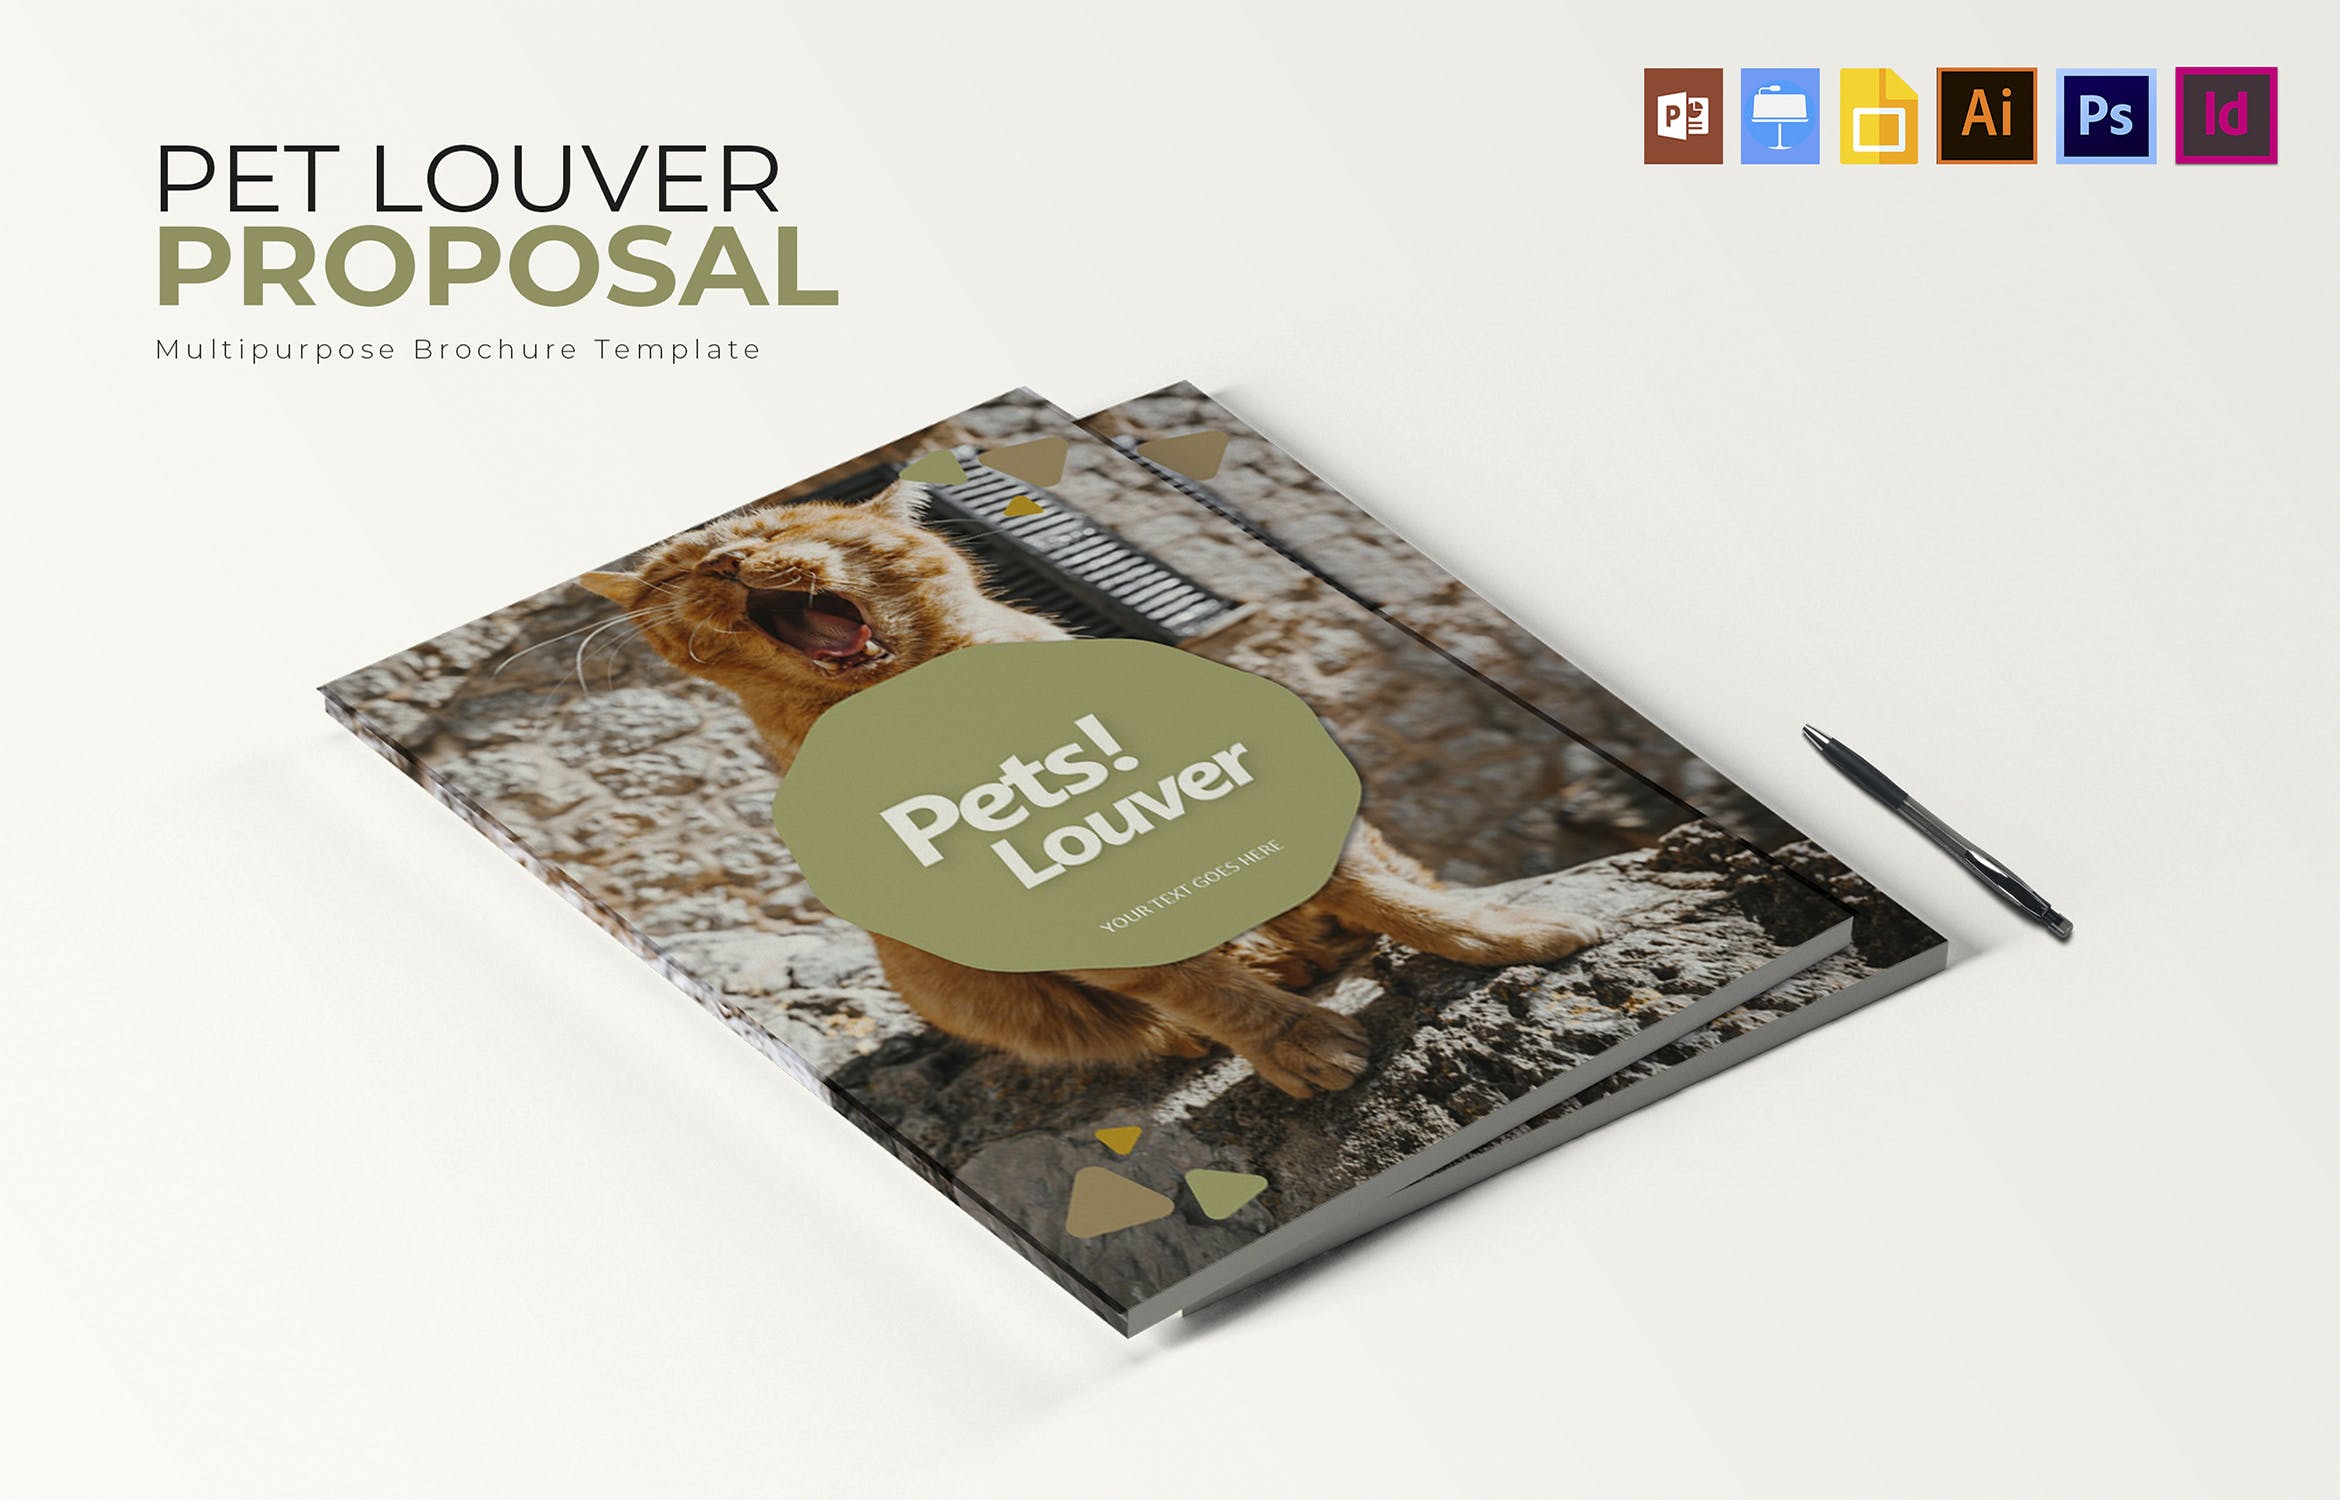 宠物主题宣传画册设计模板 Pets Louver | Brochure Template插图3